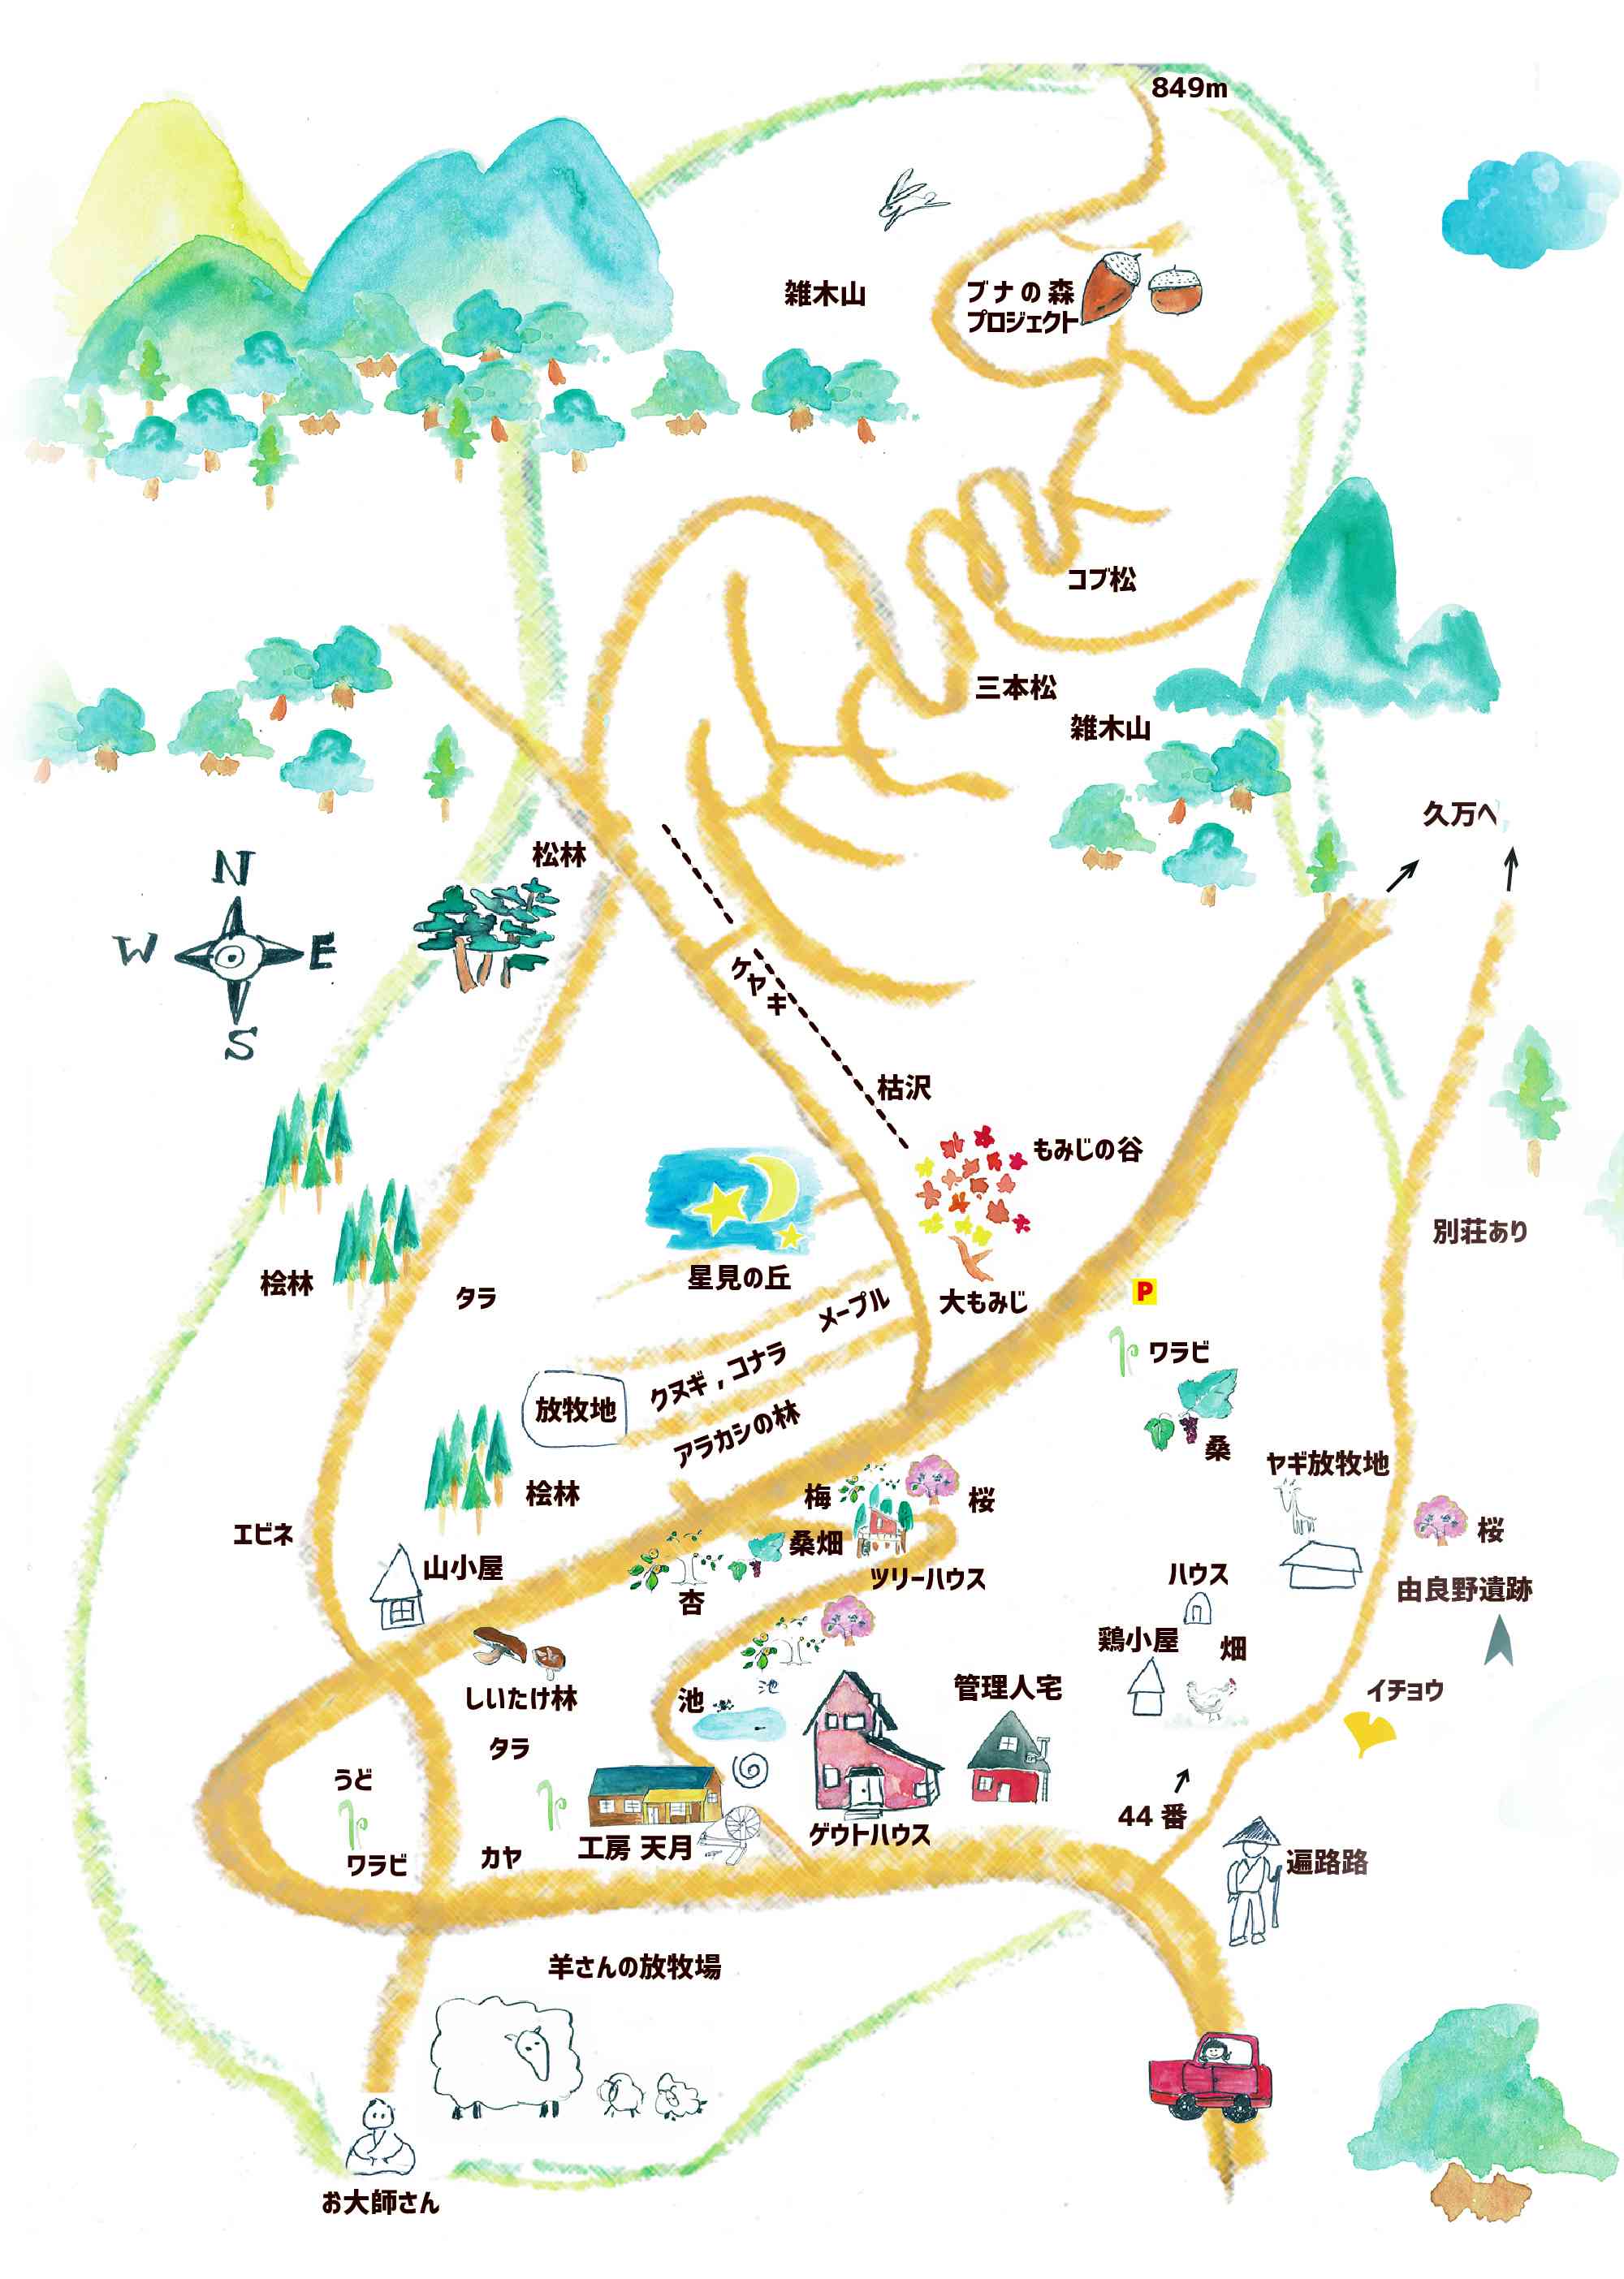 由良野の森の地図 由良野の森 愛媛 久万高原 豊かな里山環境での生活体験や学習 文化交流